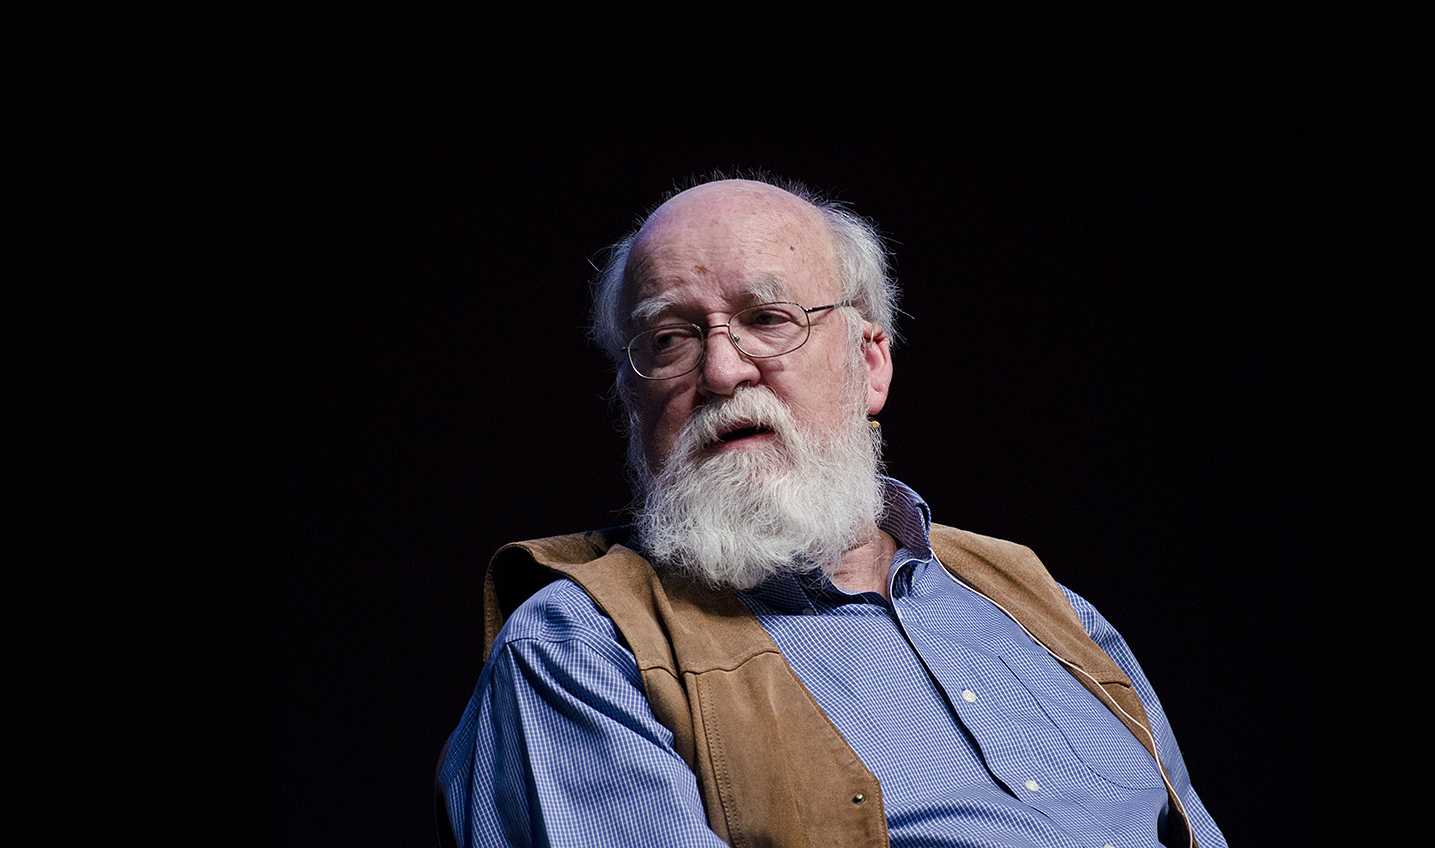 Daniel Dennett books